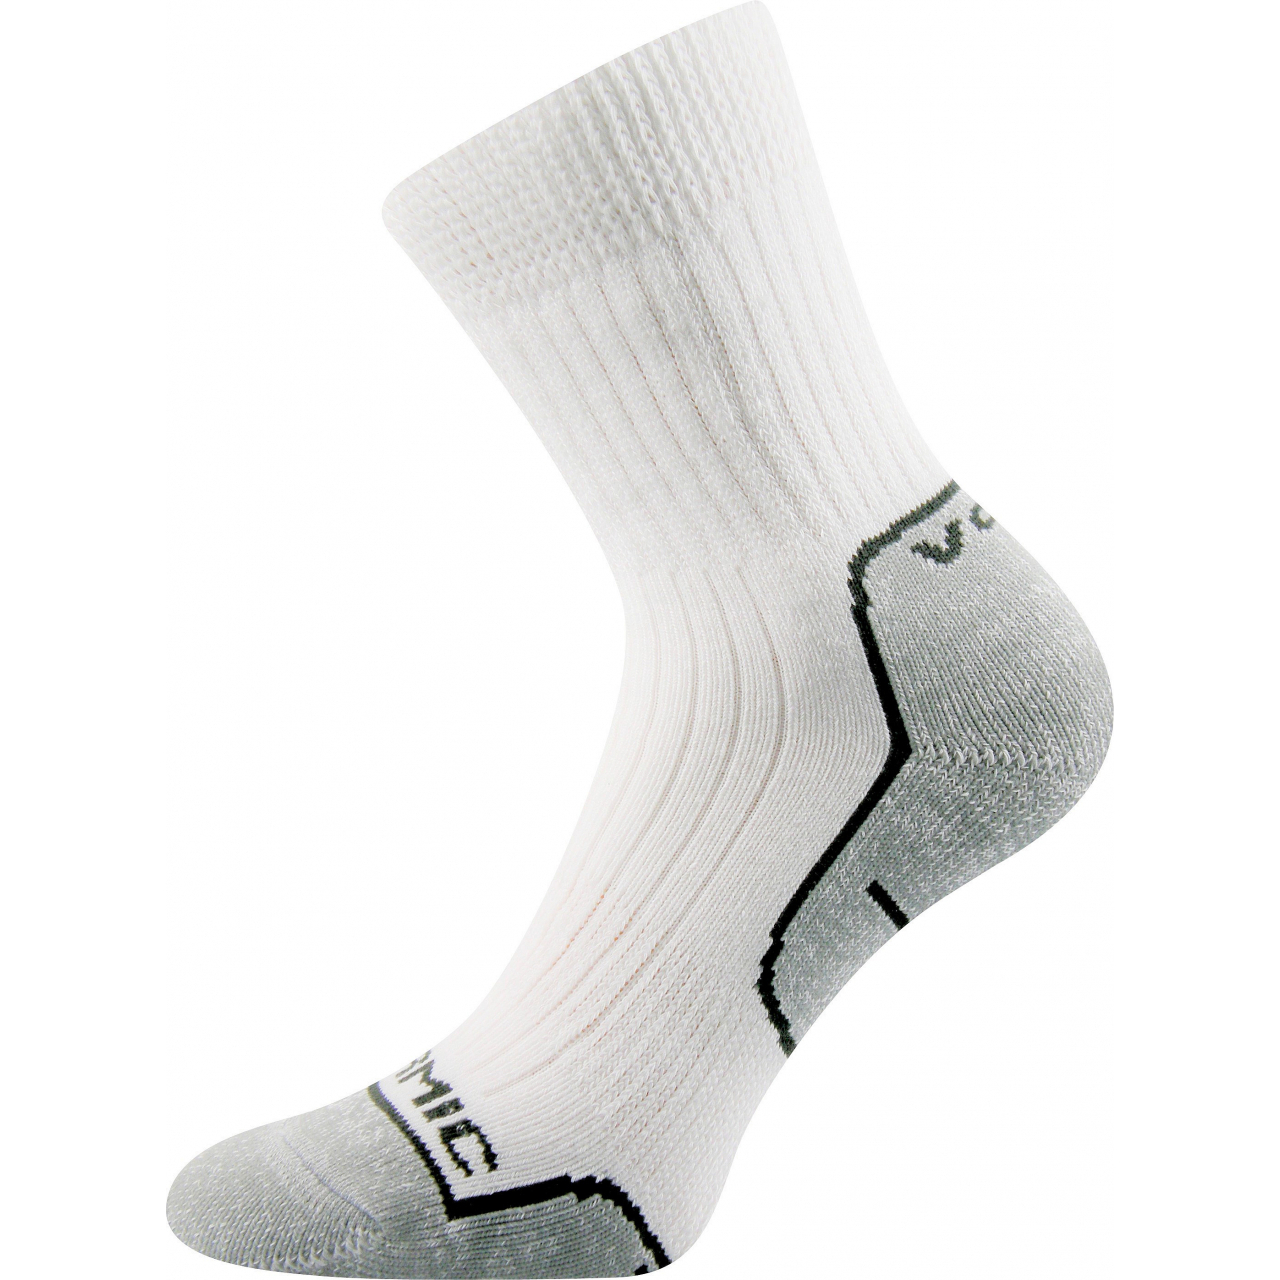 Ponožky unisex termo Voxx Zenith L + P - bílé-šedé, 43-45